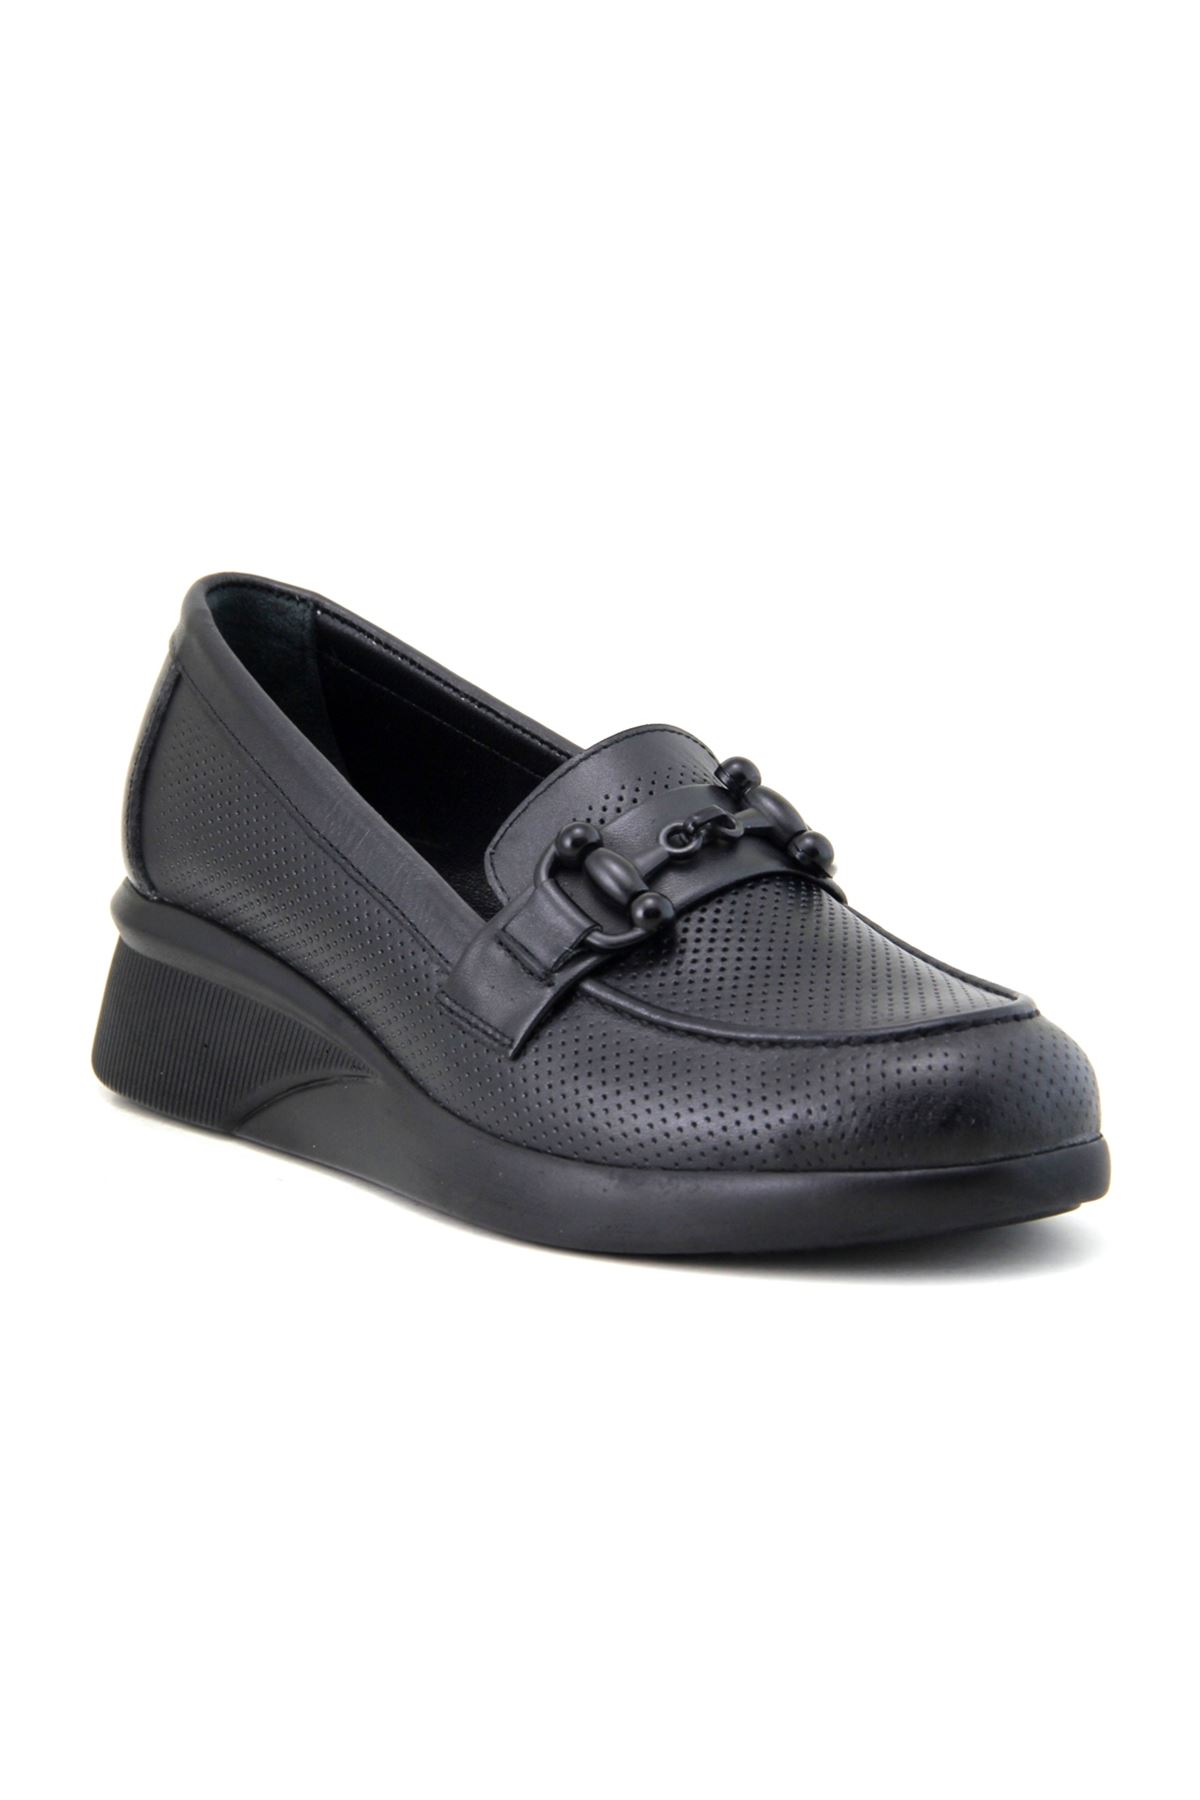 Albini 30Z702 Hakiki Deri Kadın Ayakkabı - Siyah